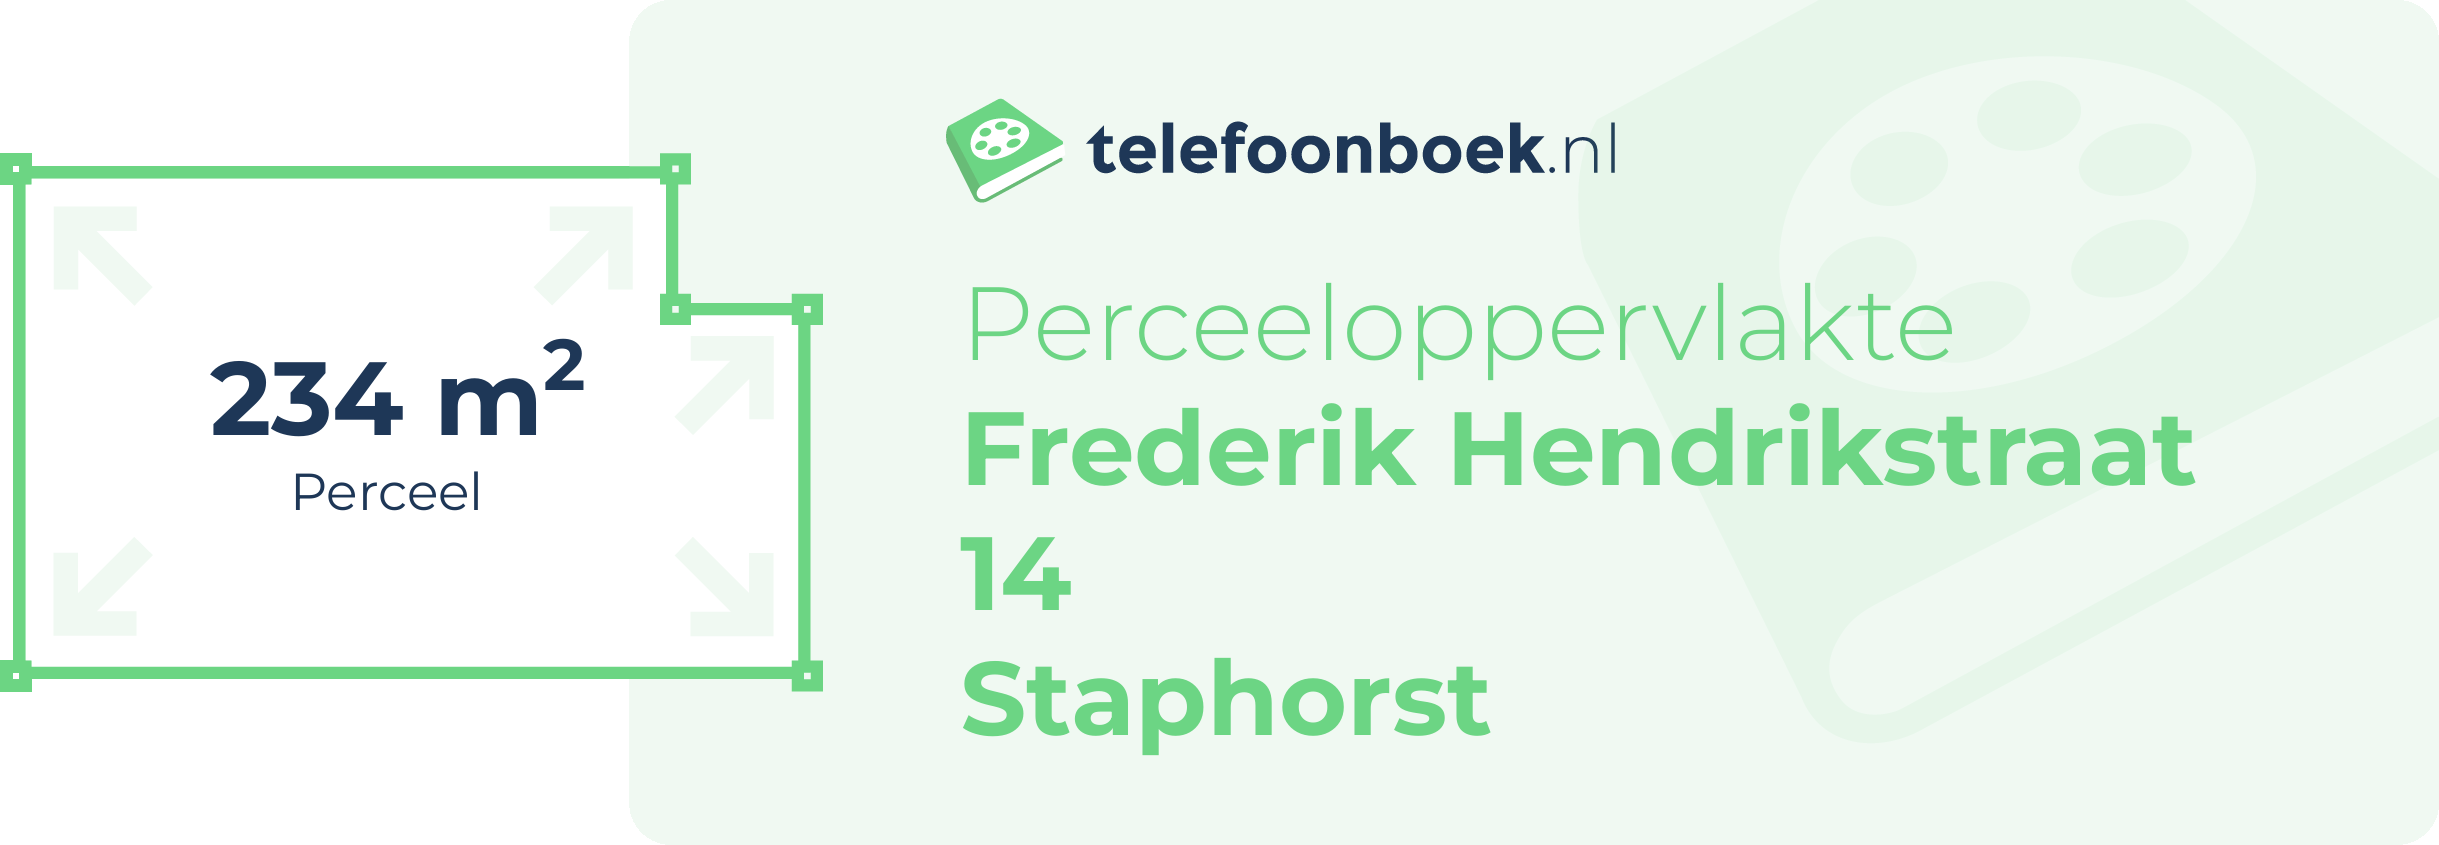 Perceeloppervlakte Frederik Hendrikstraat 14 Staphorst